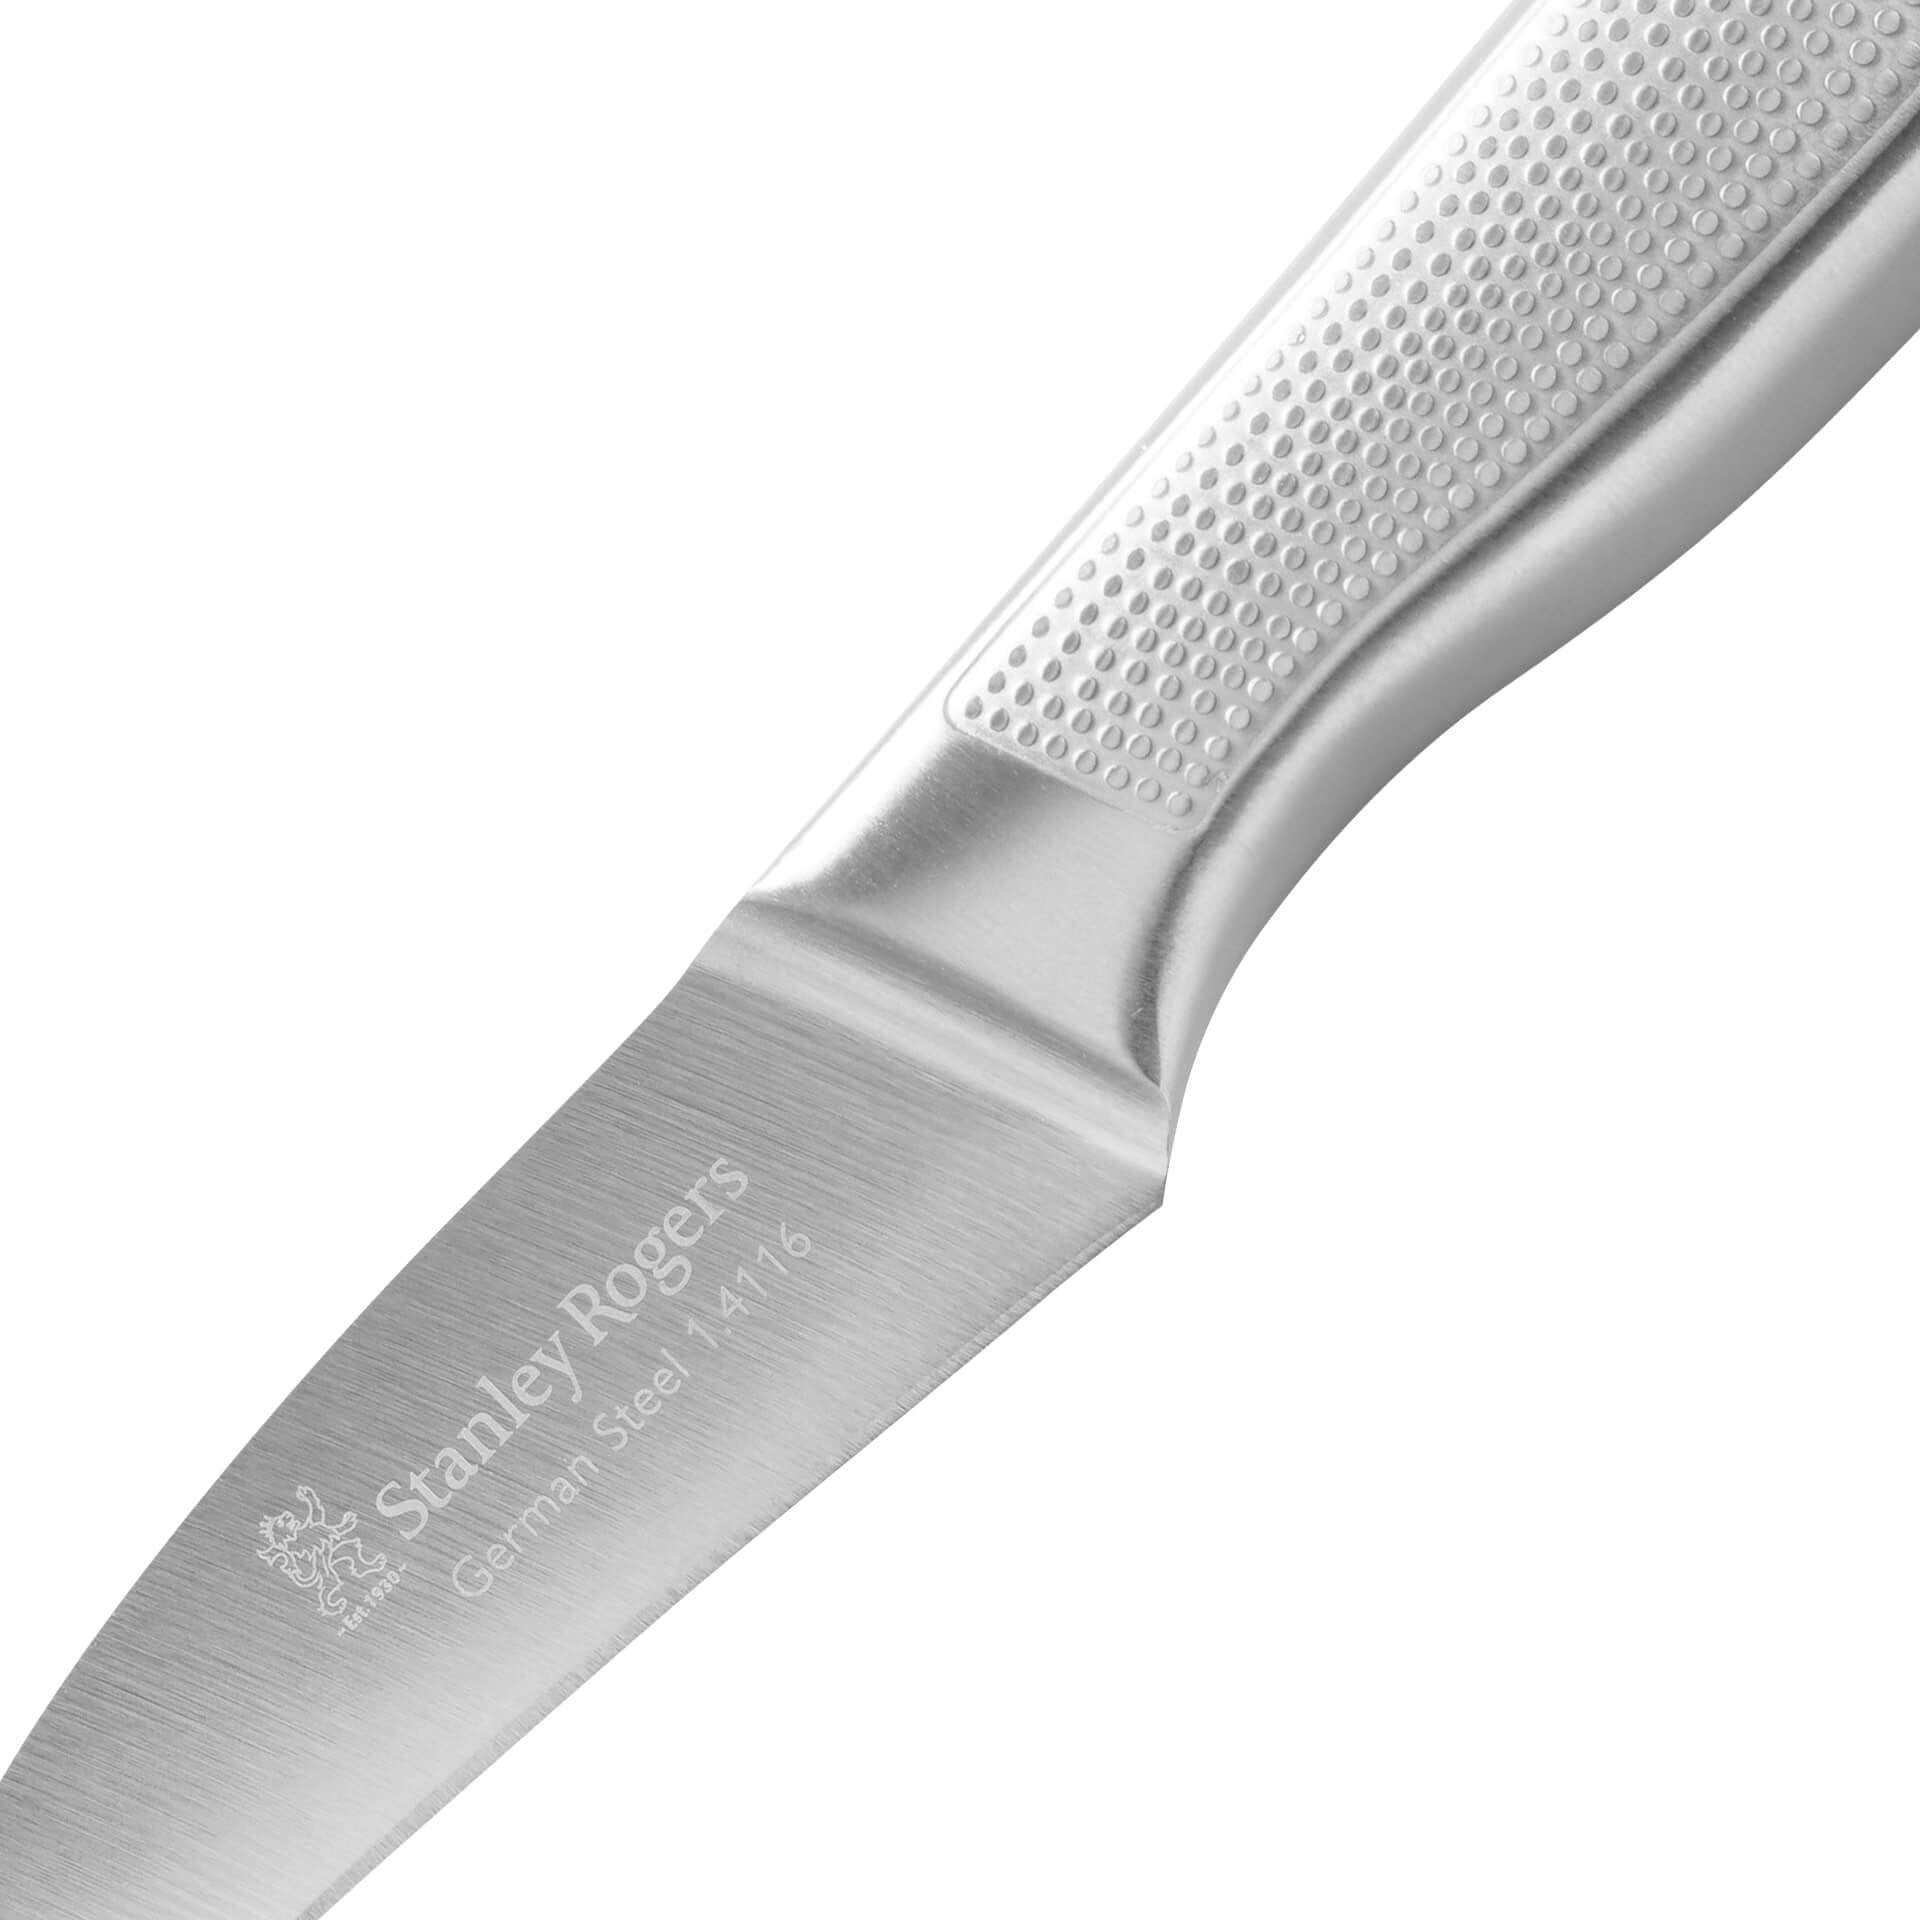 Stanley Rogers Peeling Knife, Presicion, German Stainless Steel